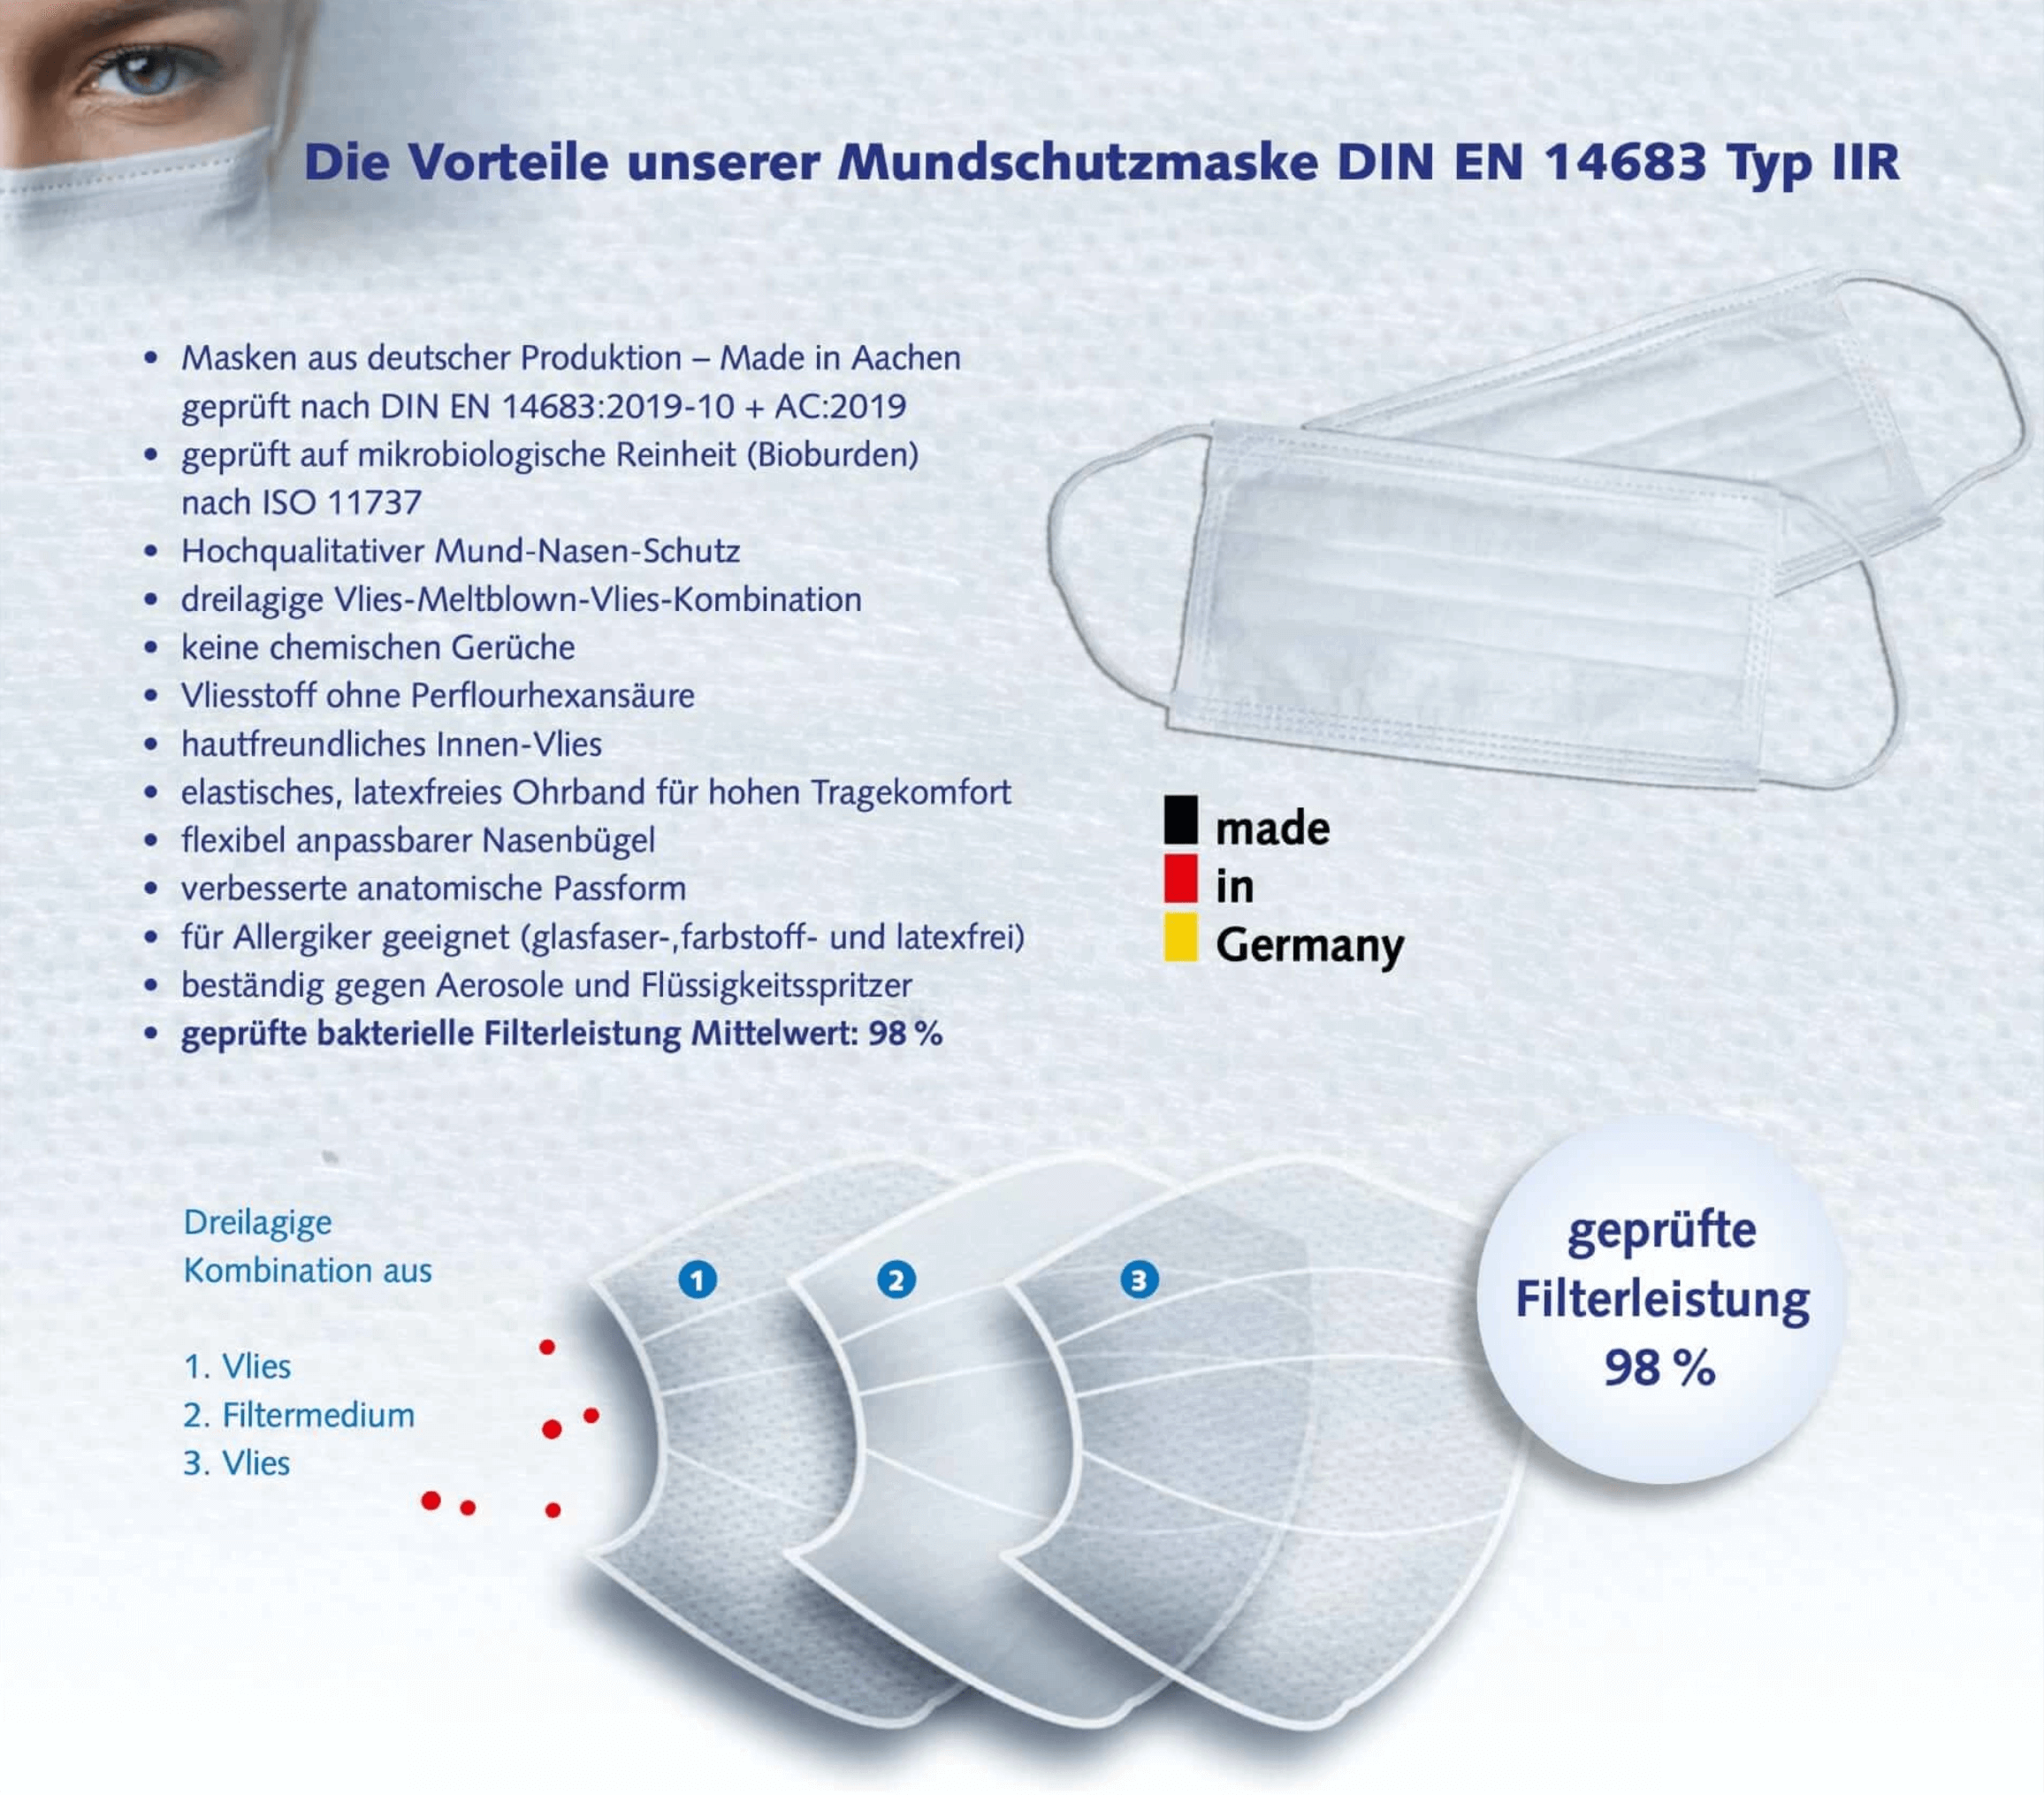 Die Vorteile unserer Mundschutzmaske DIN EN 14683 aus deutscher Produktion